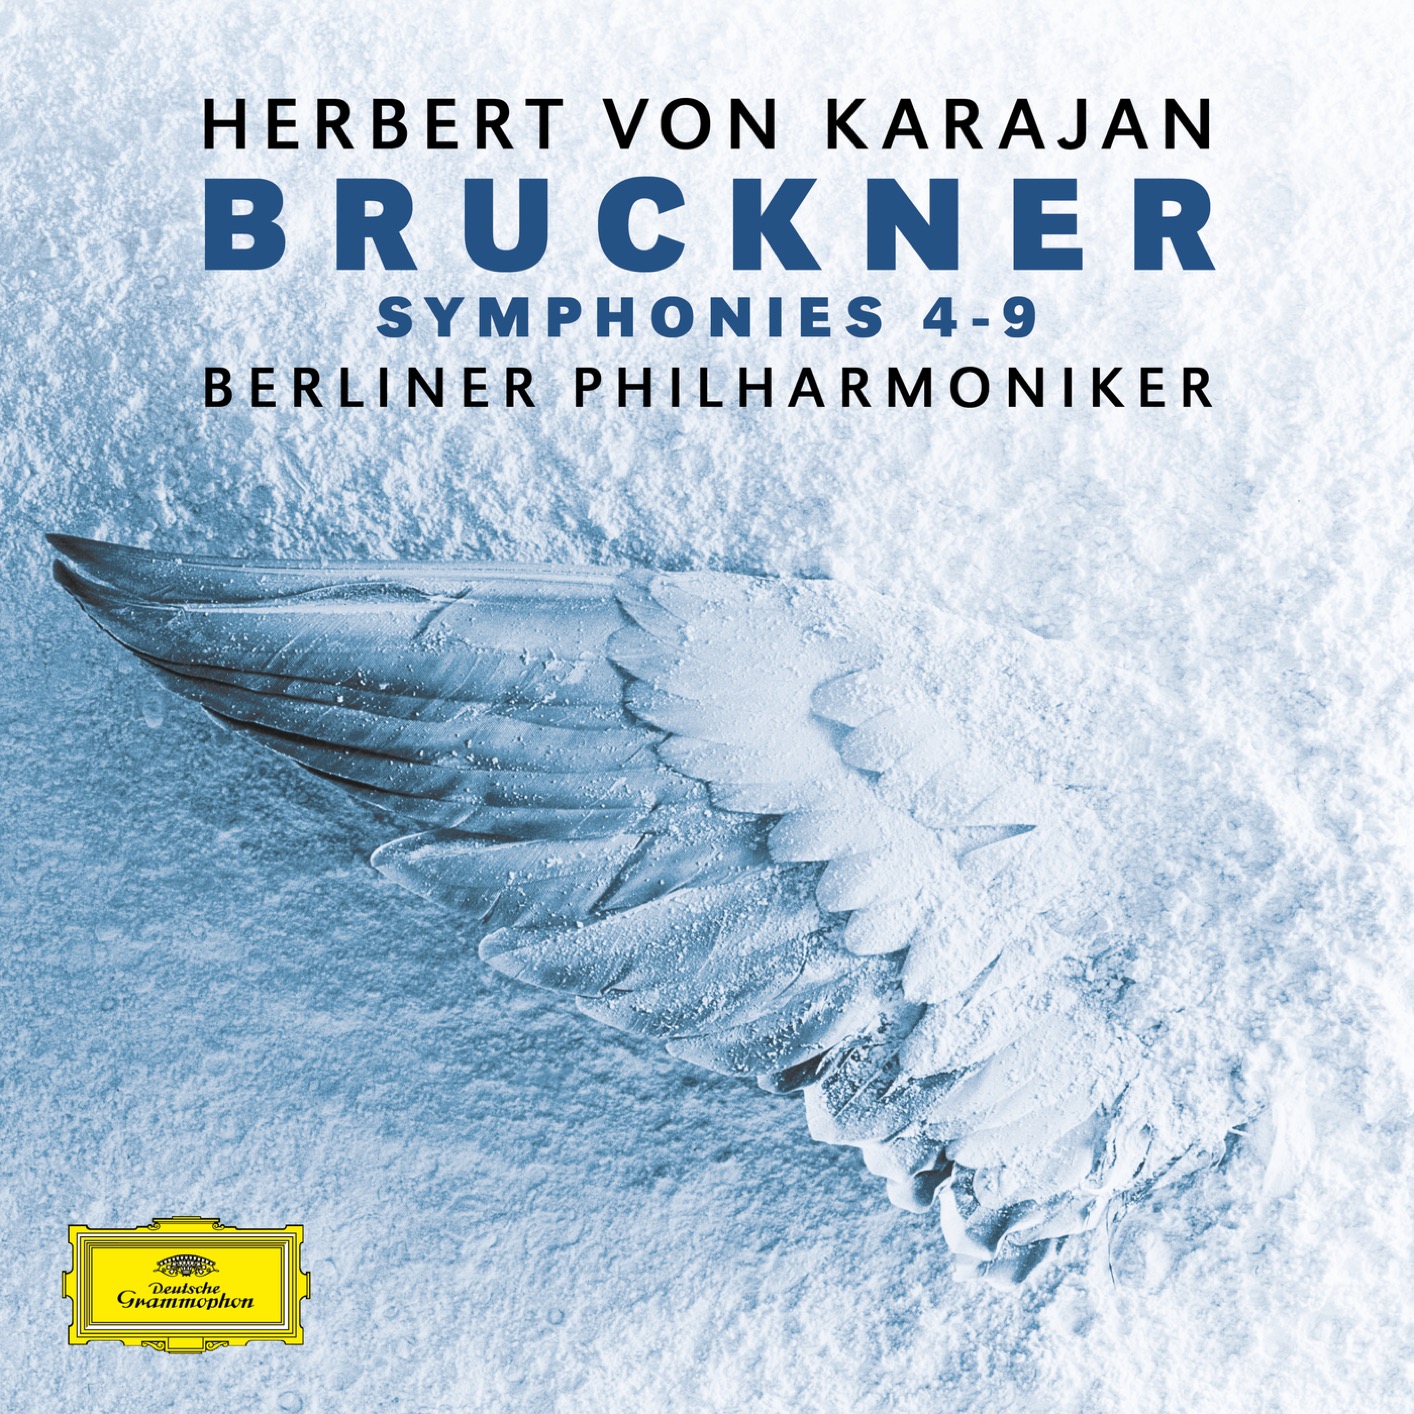 Berliner Philharmoniker & Herbert von Karajan – Bruckner: Symphonies No. 4 – No. 9 (2019) [FLAC 24bit/192kHz]